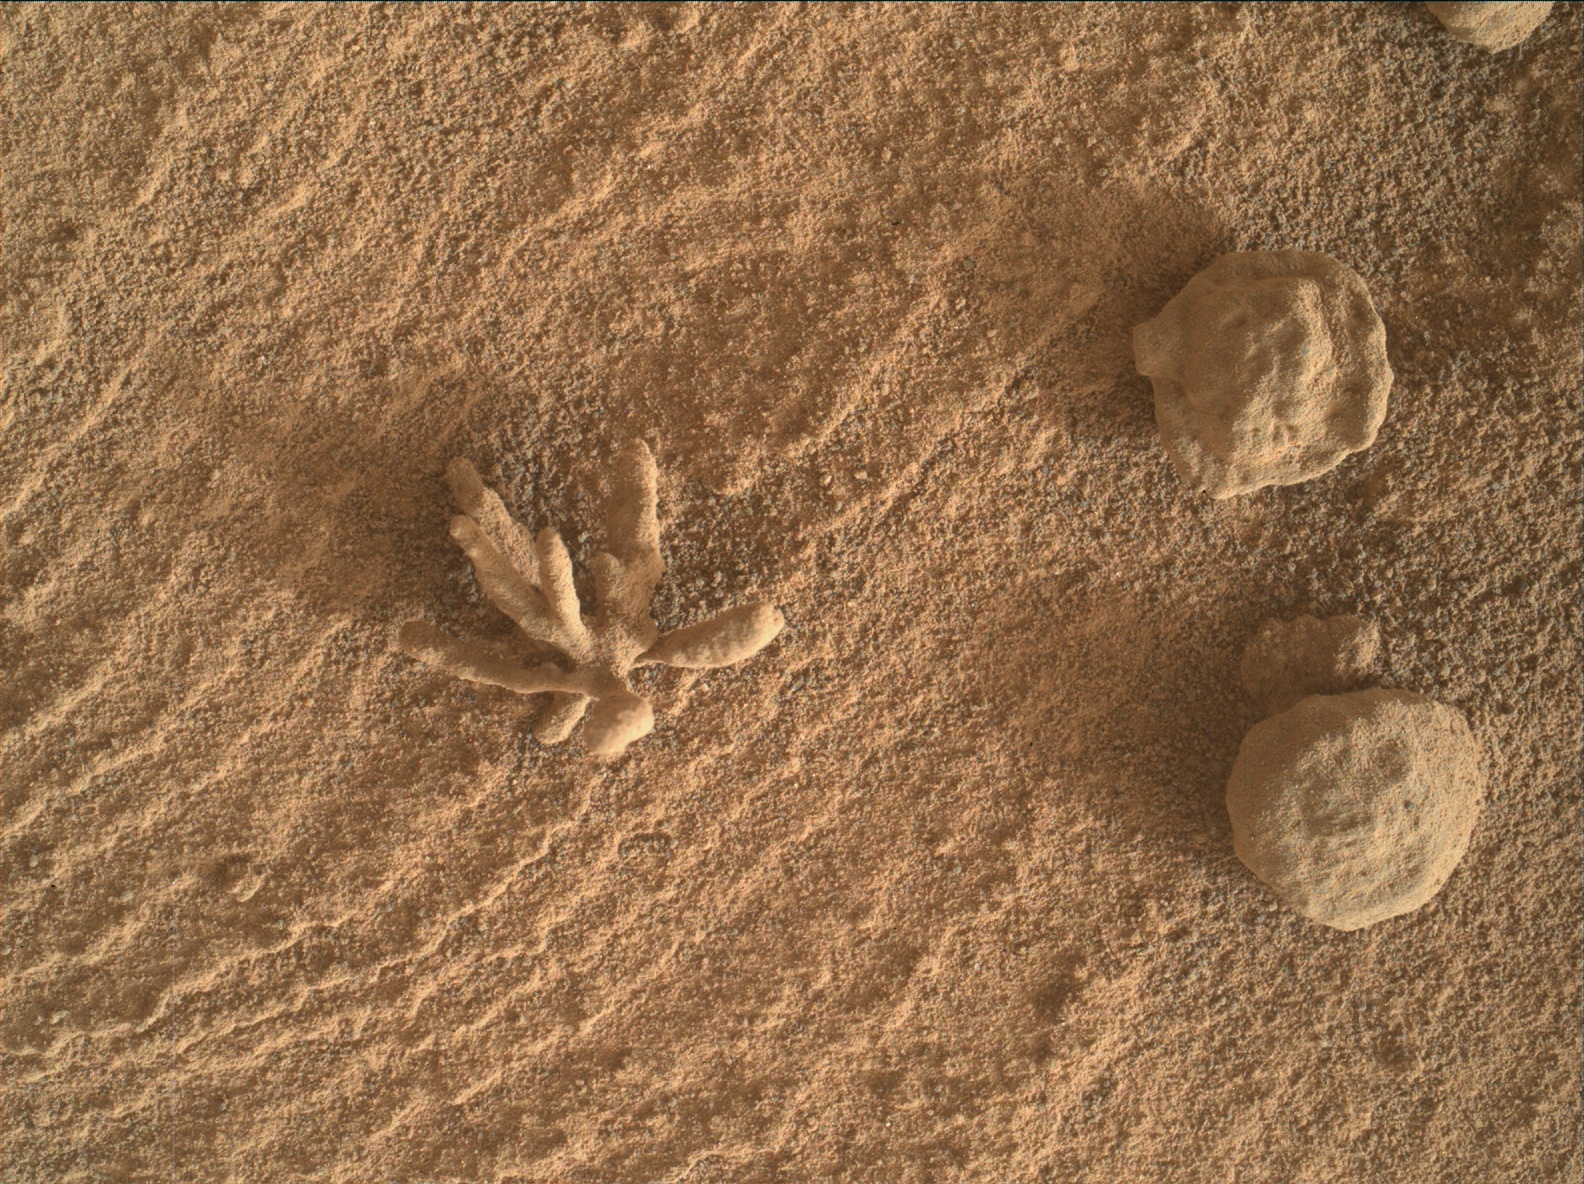 Korallszerű kökénysóra leltek a Marson